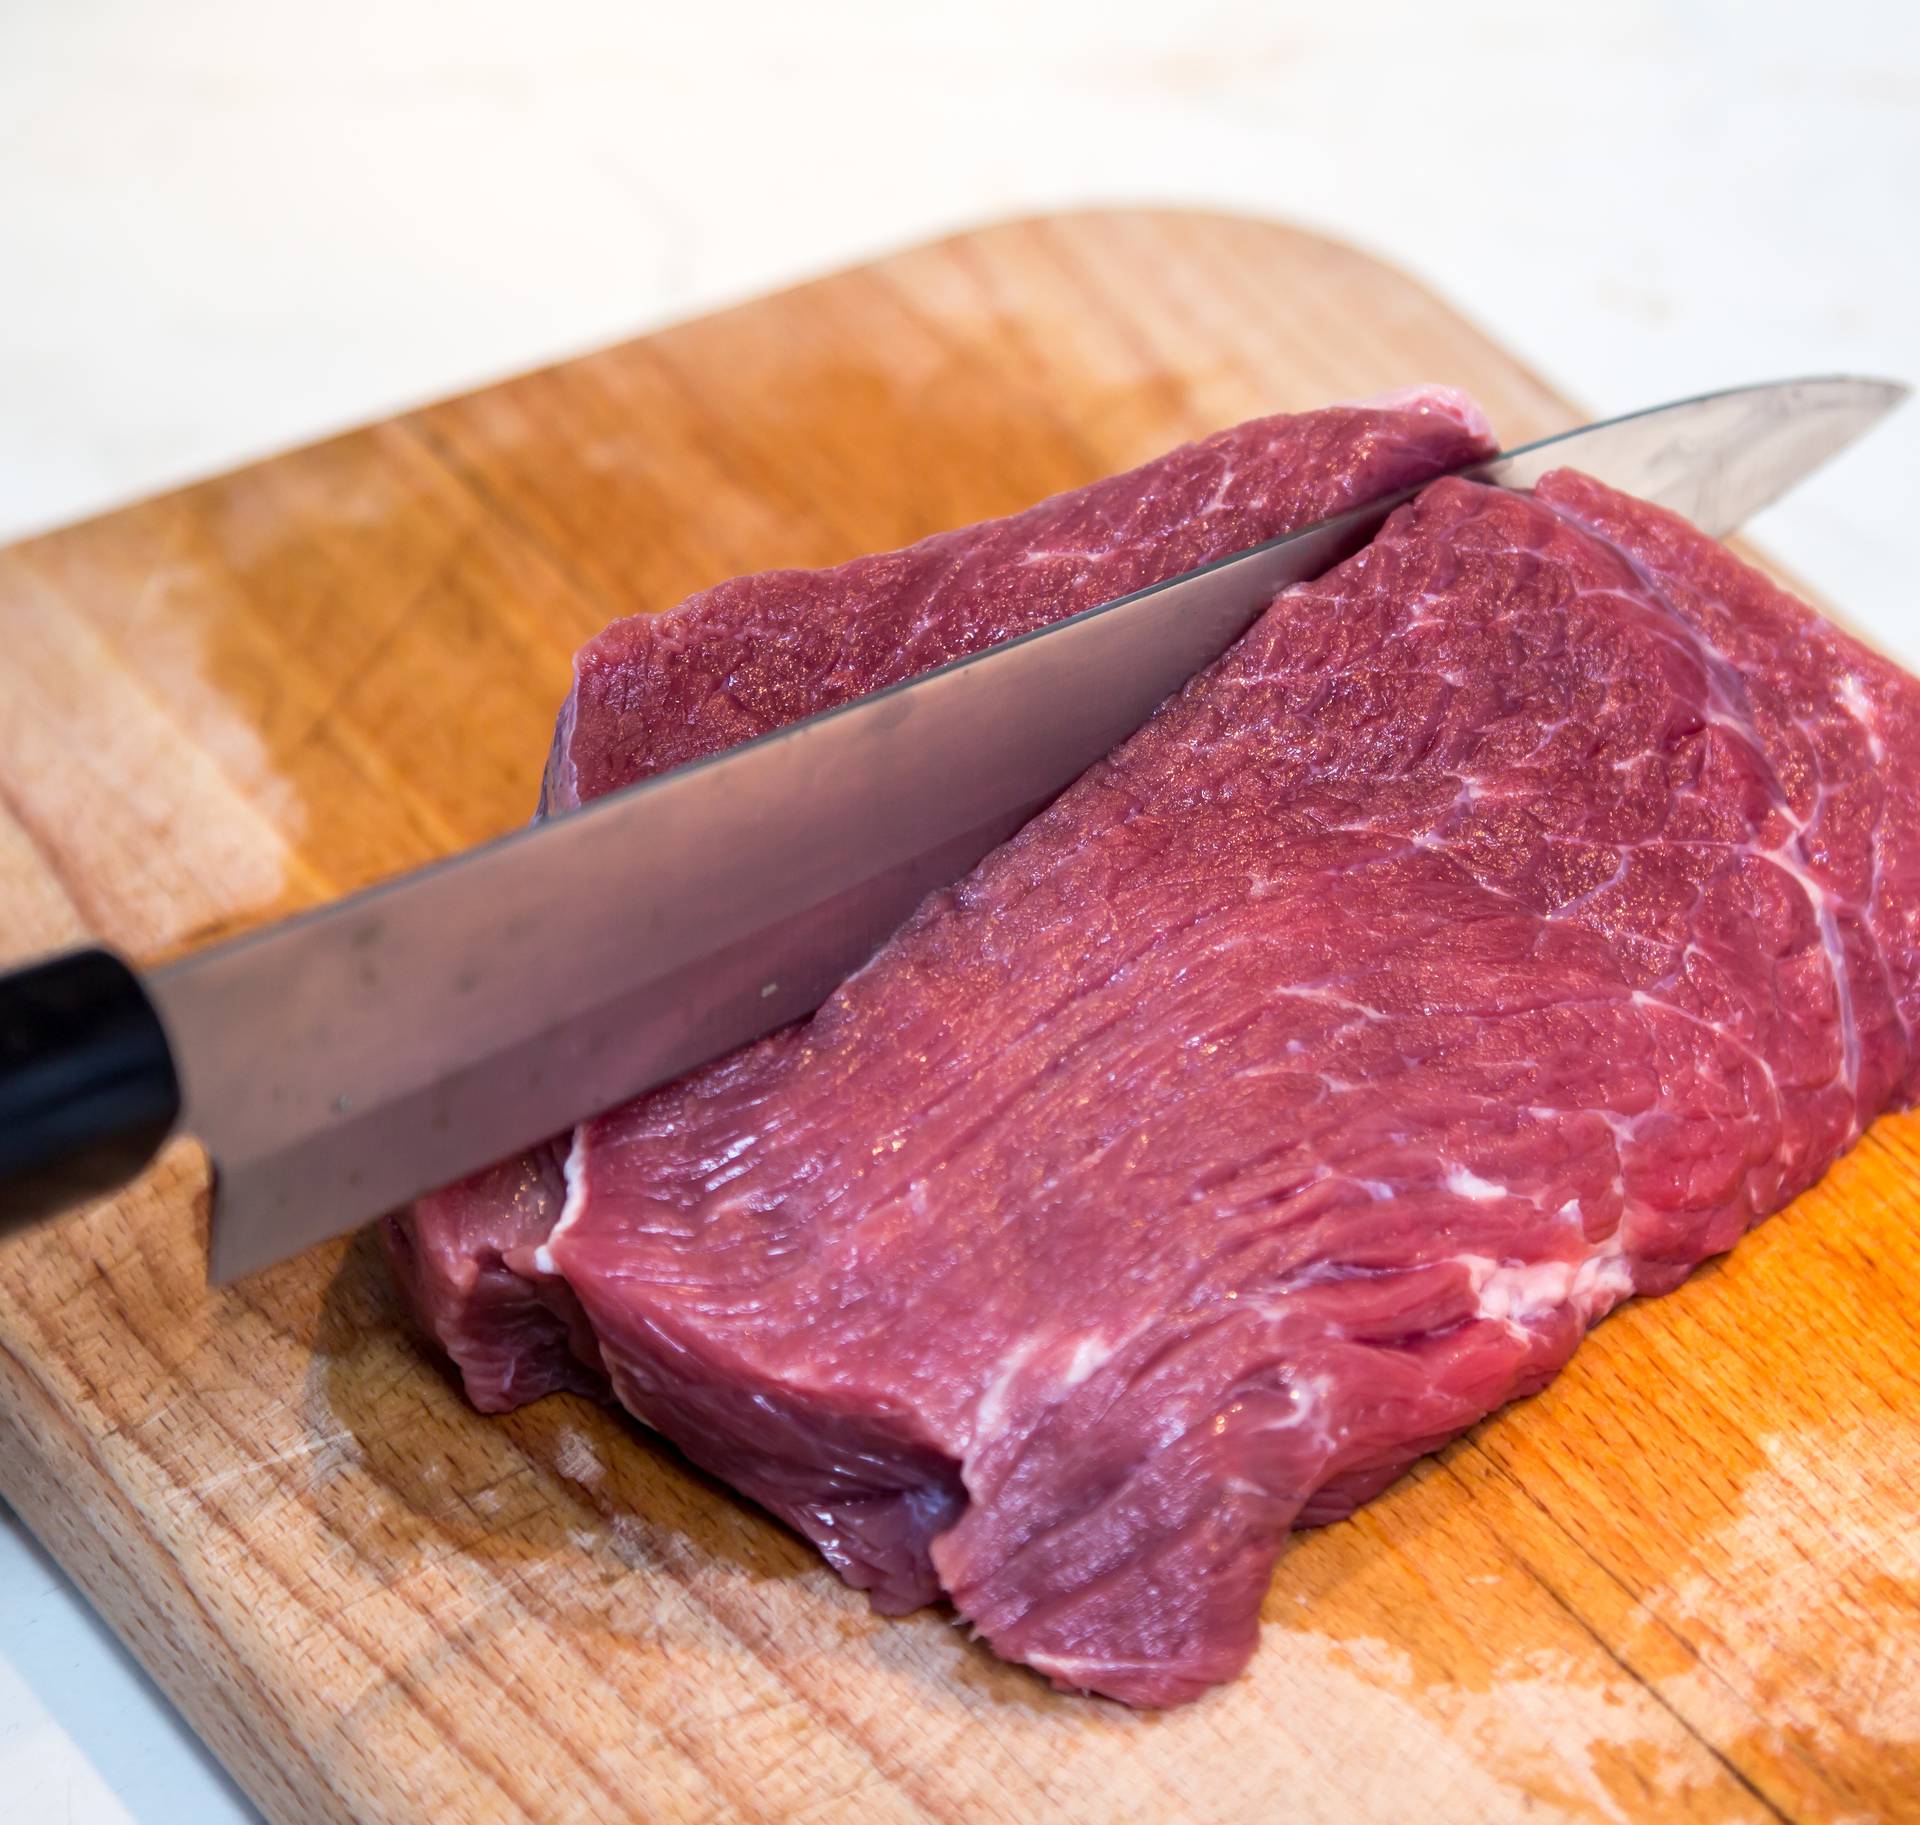 Kulinarski trikovi za savršeno kuhano, pečeno ili pohano meso